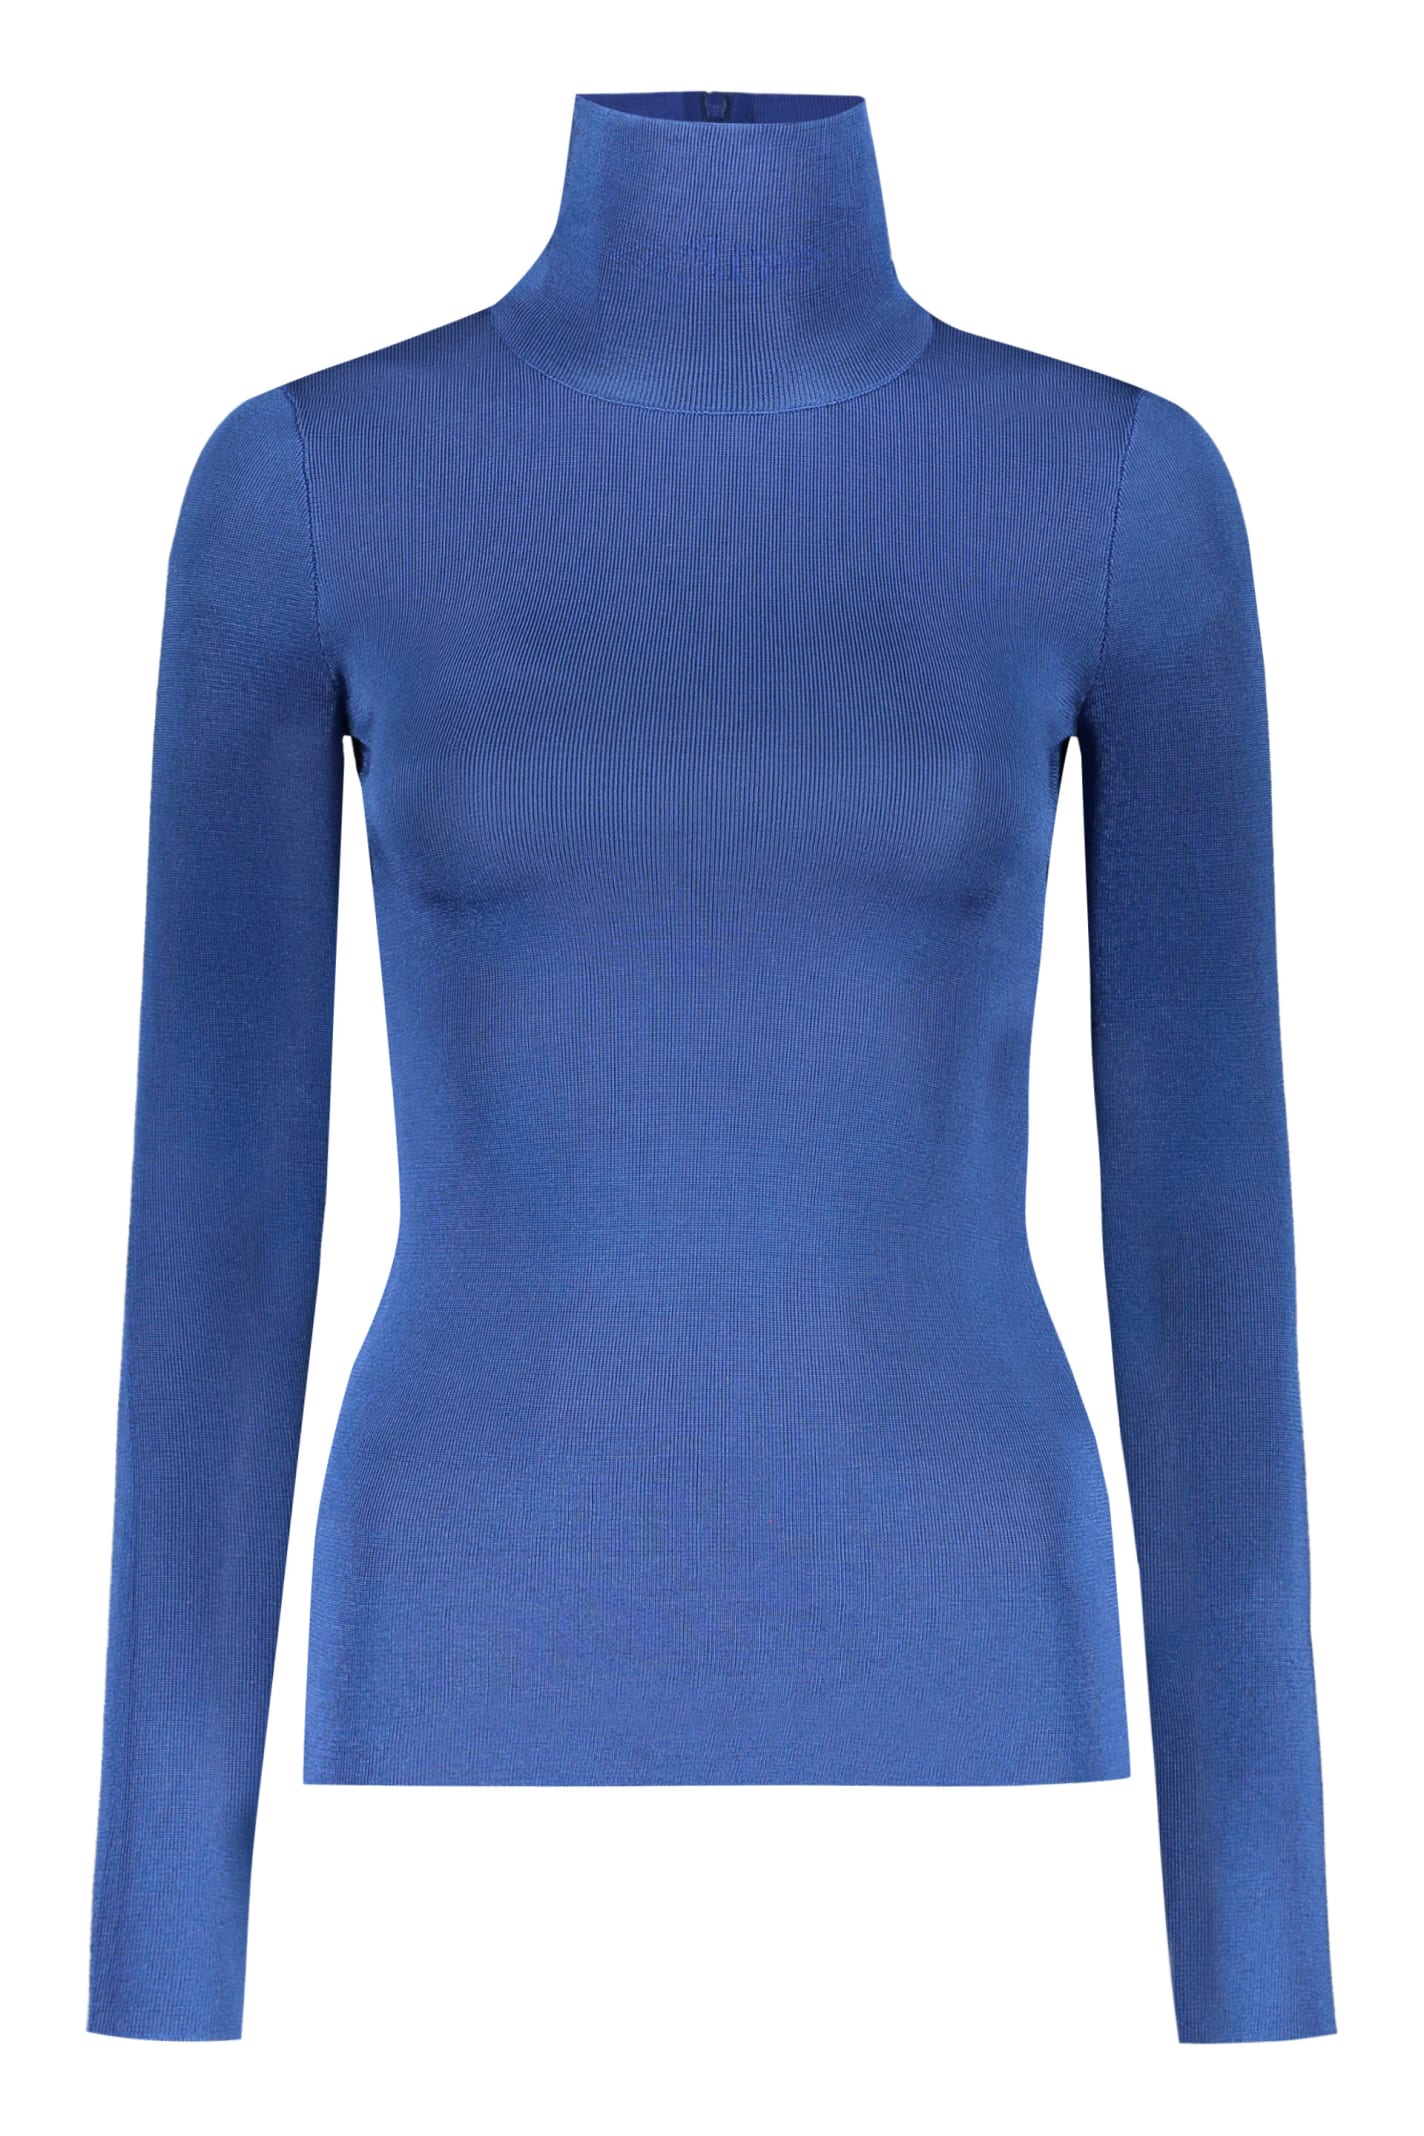 Missoni Wool Blend Turtleneck Sweater In Blue